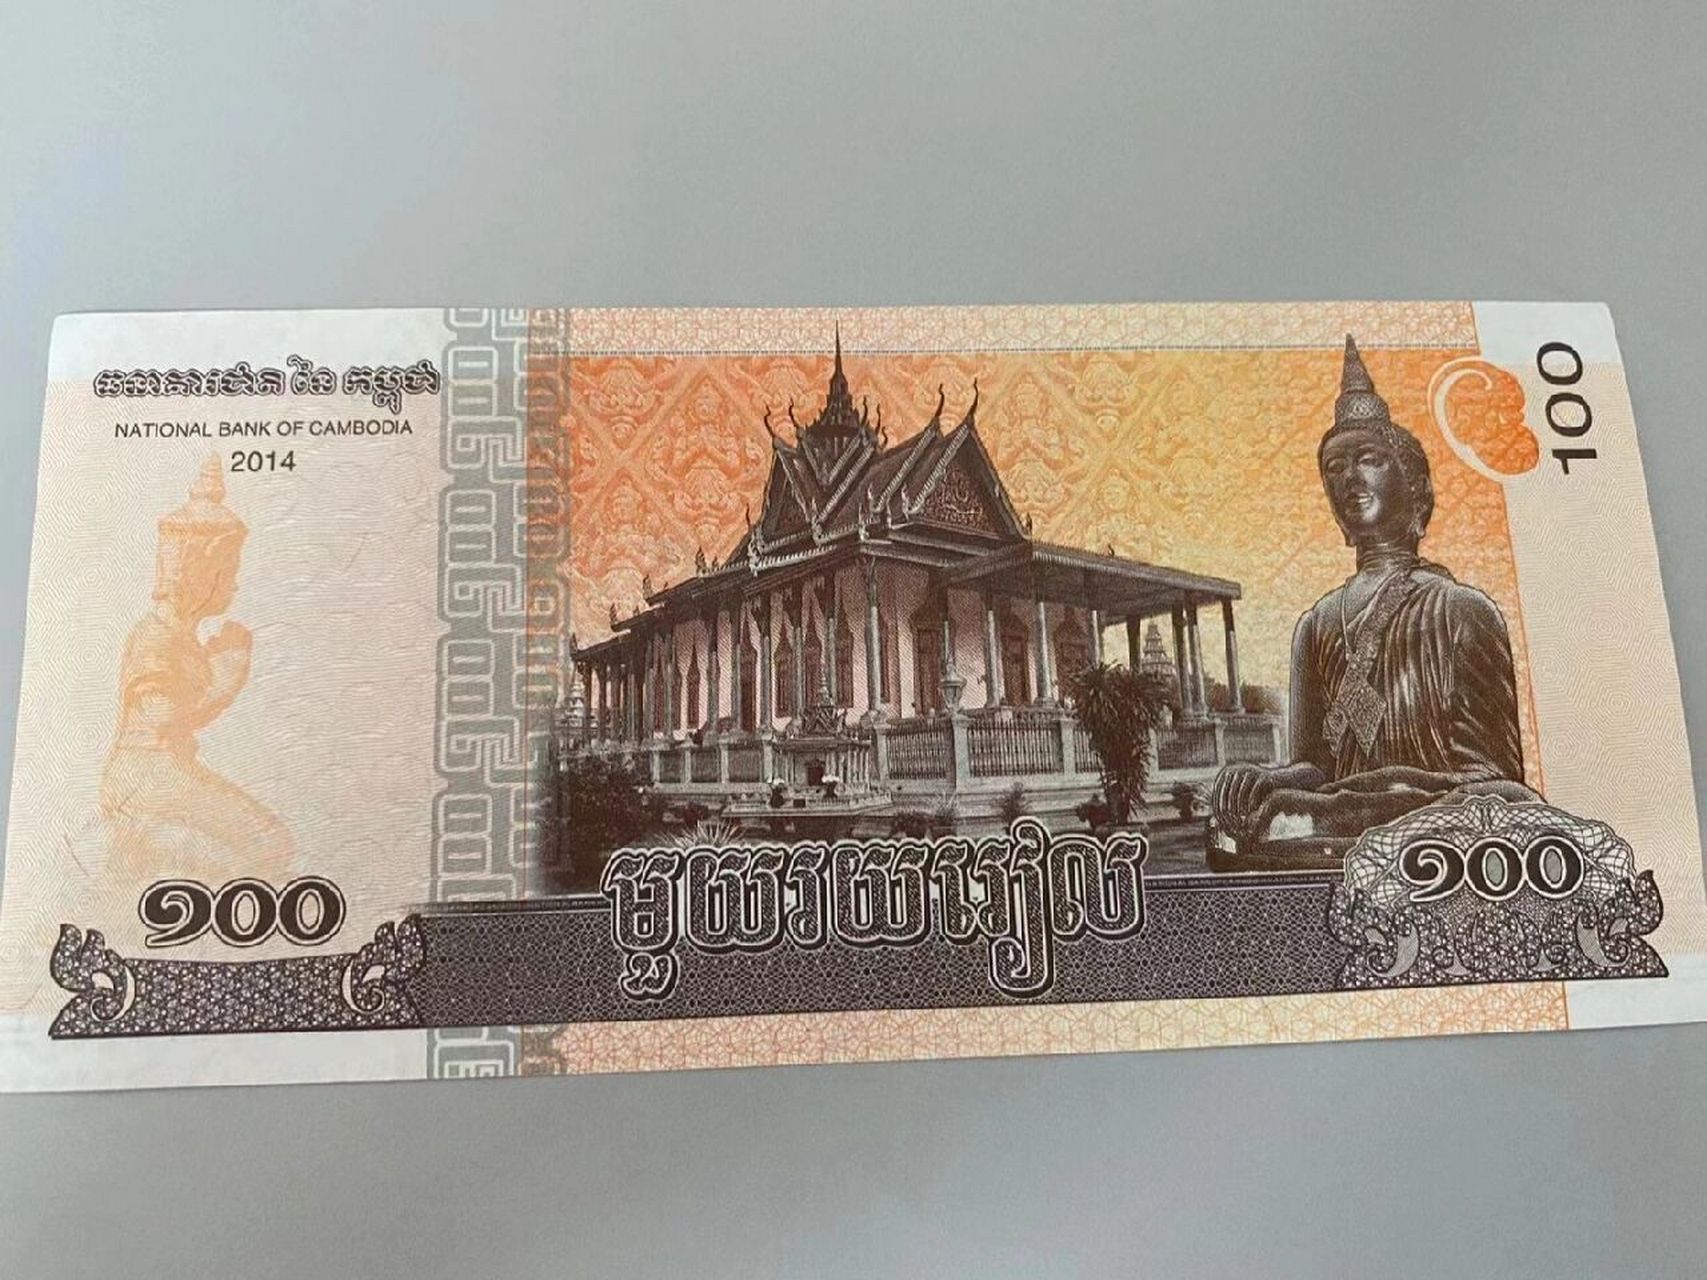 柬埔寨钱币瑞尔【100折合人民币约016块钱